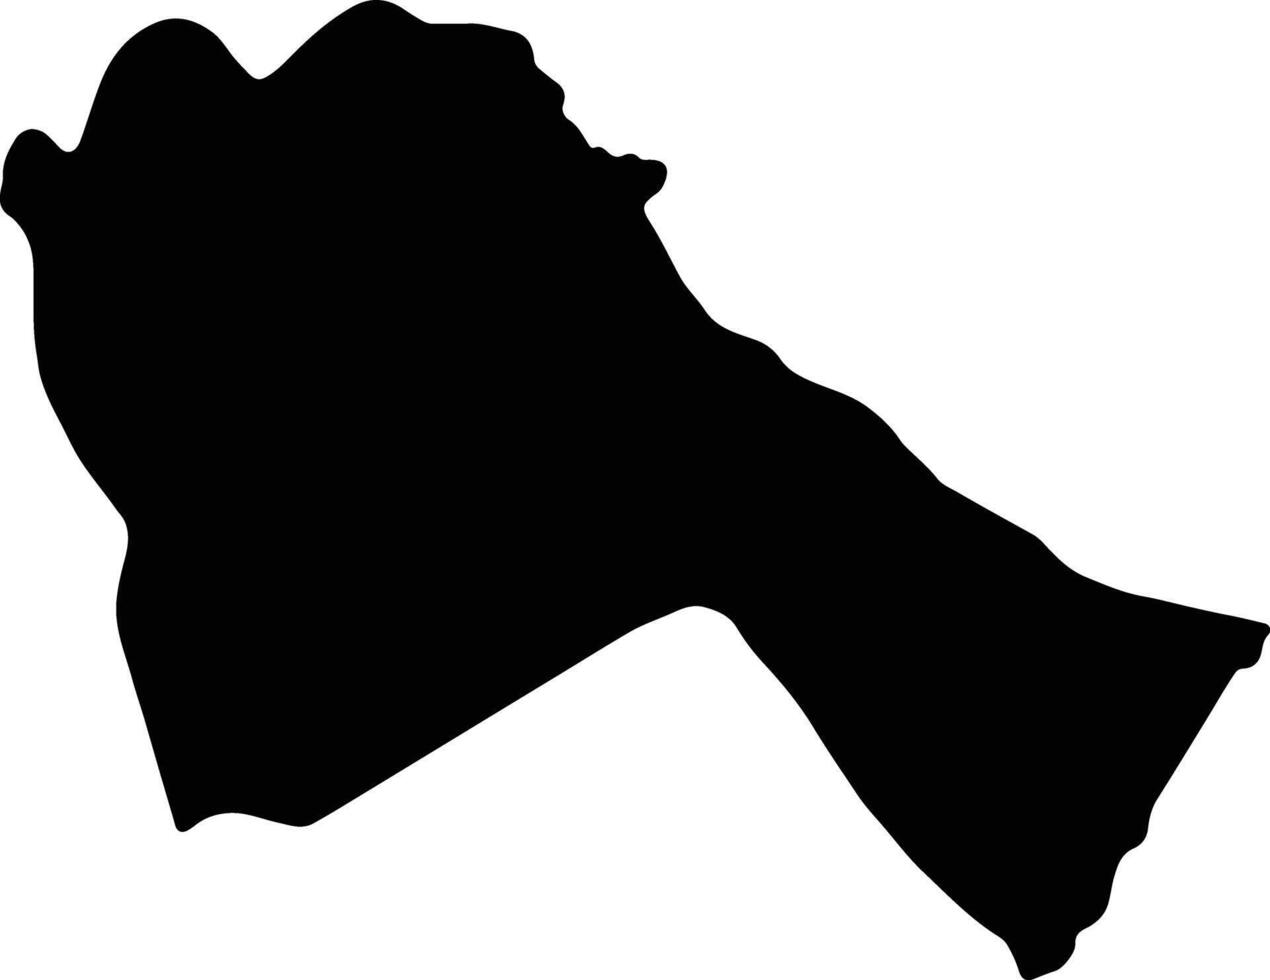 sennar Sudan silhouette carta geografica vettore